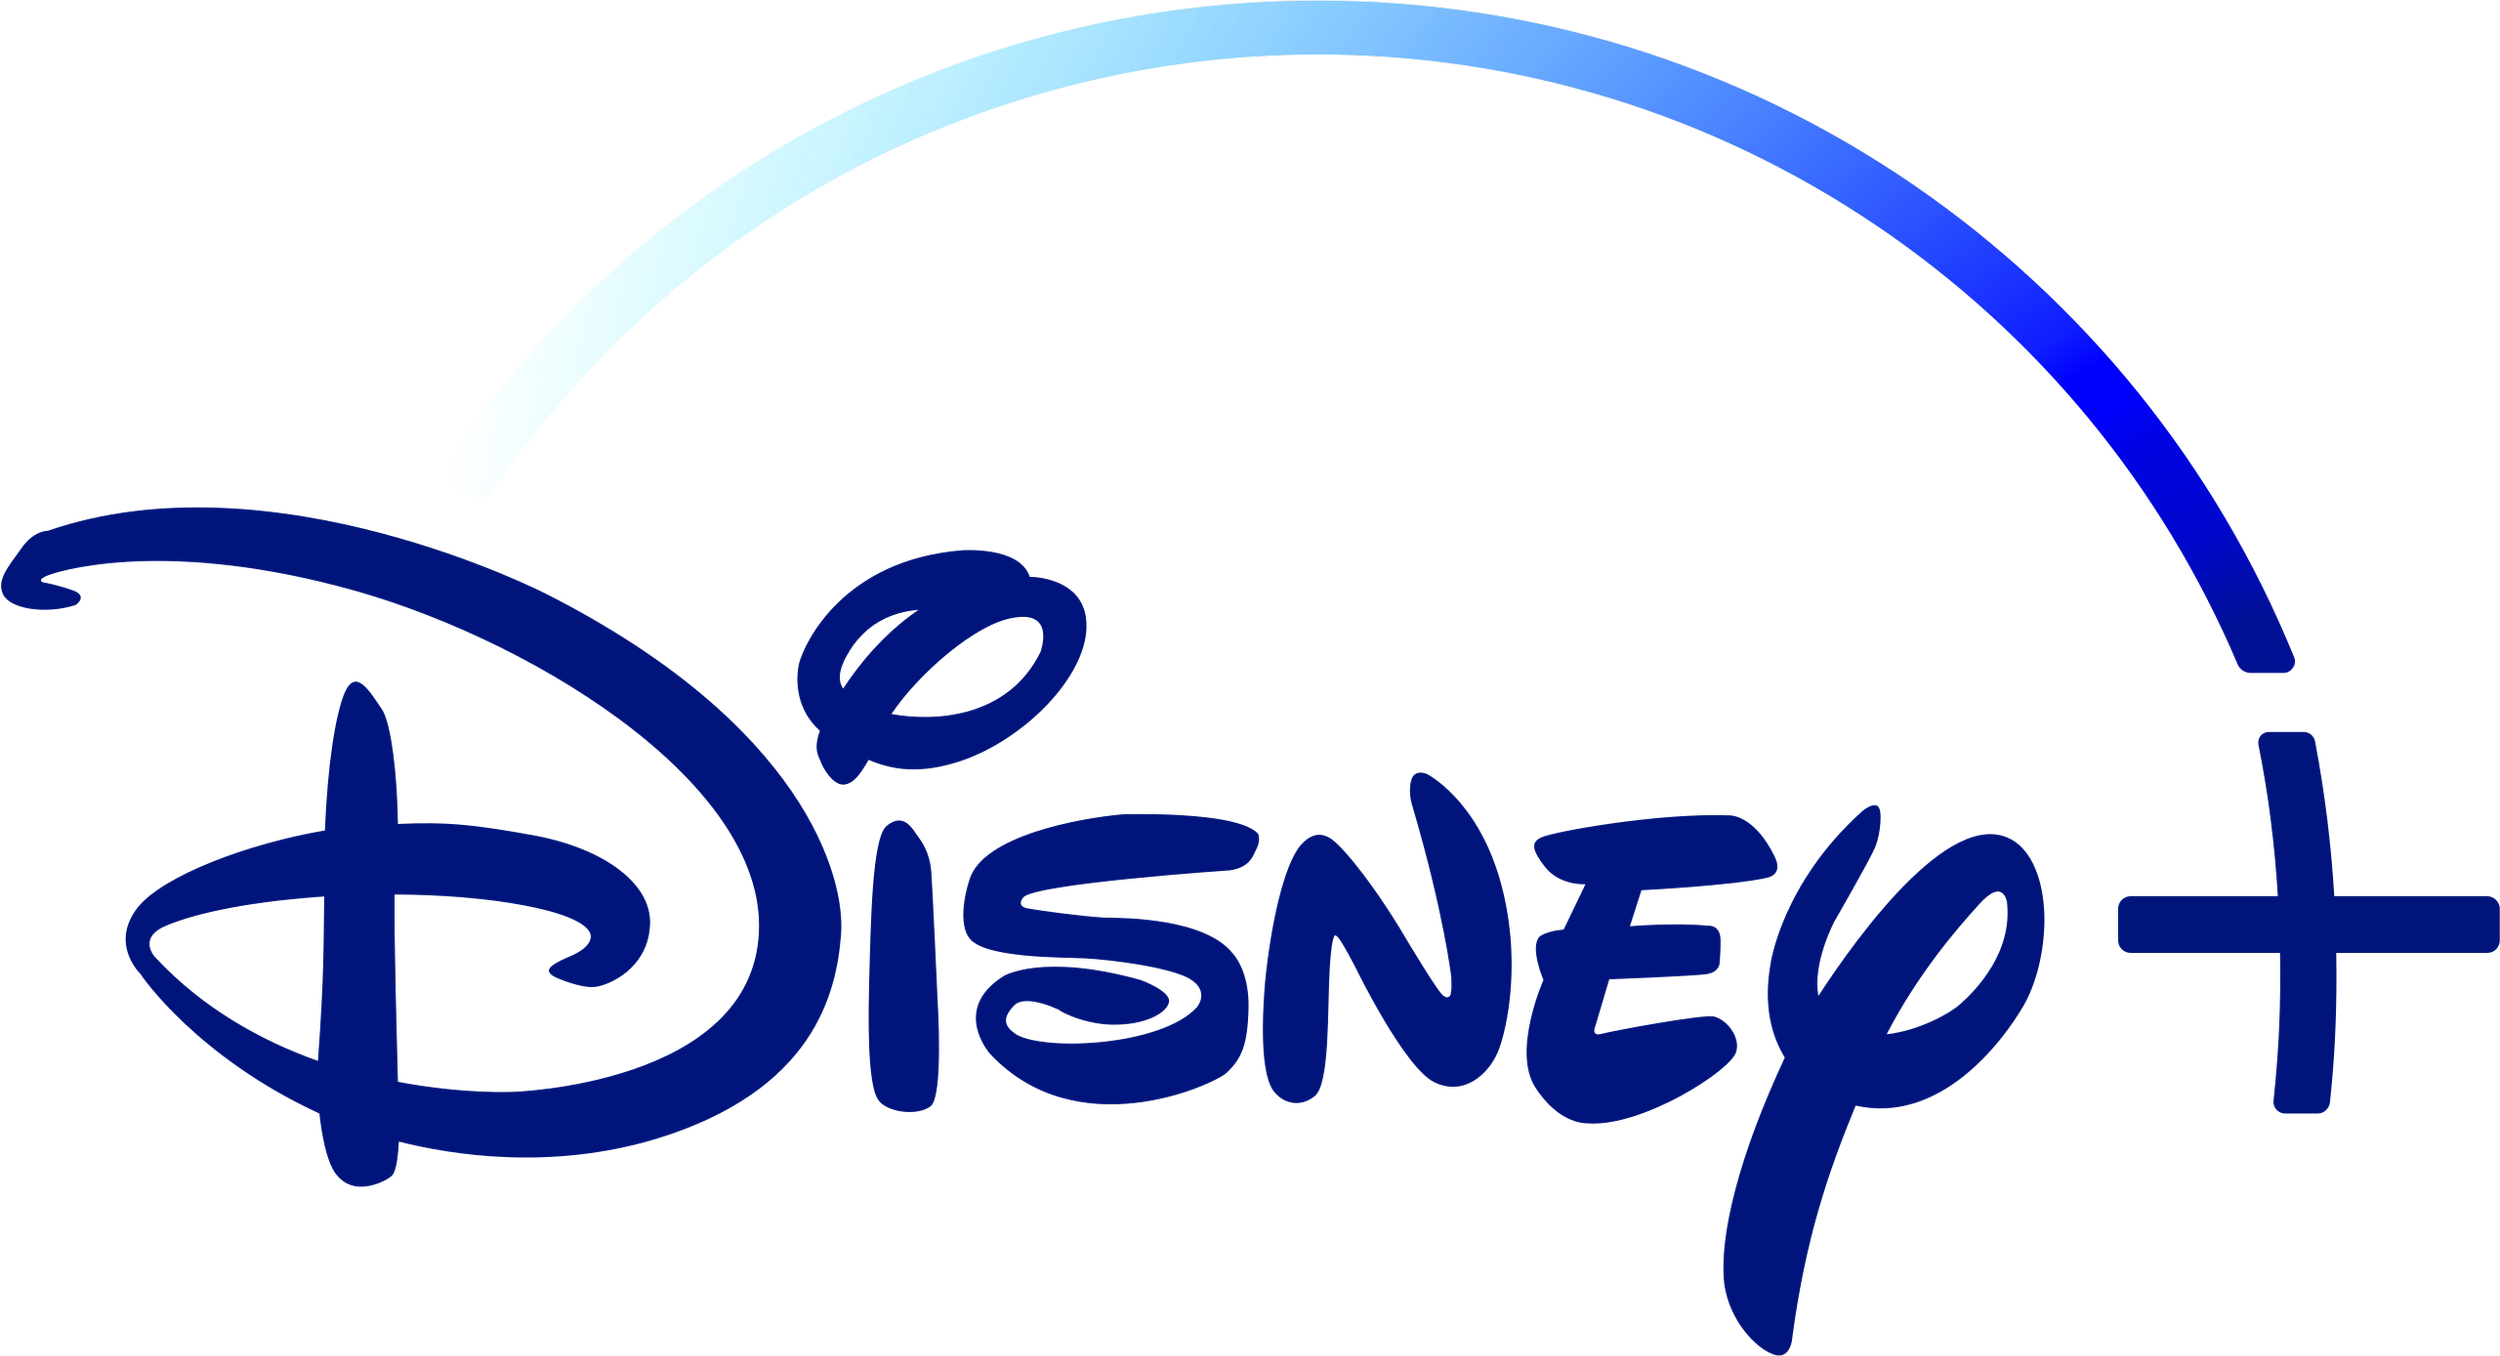 Disney+_logo.svg.png